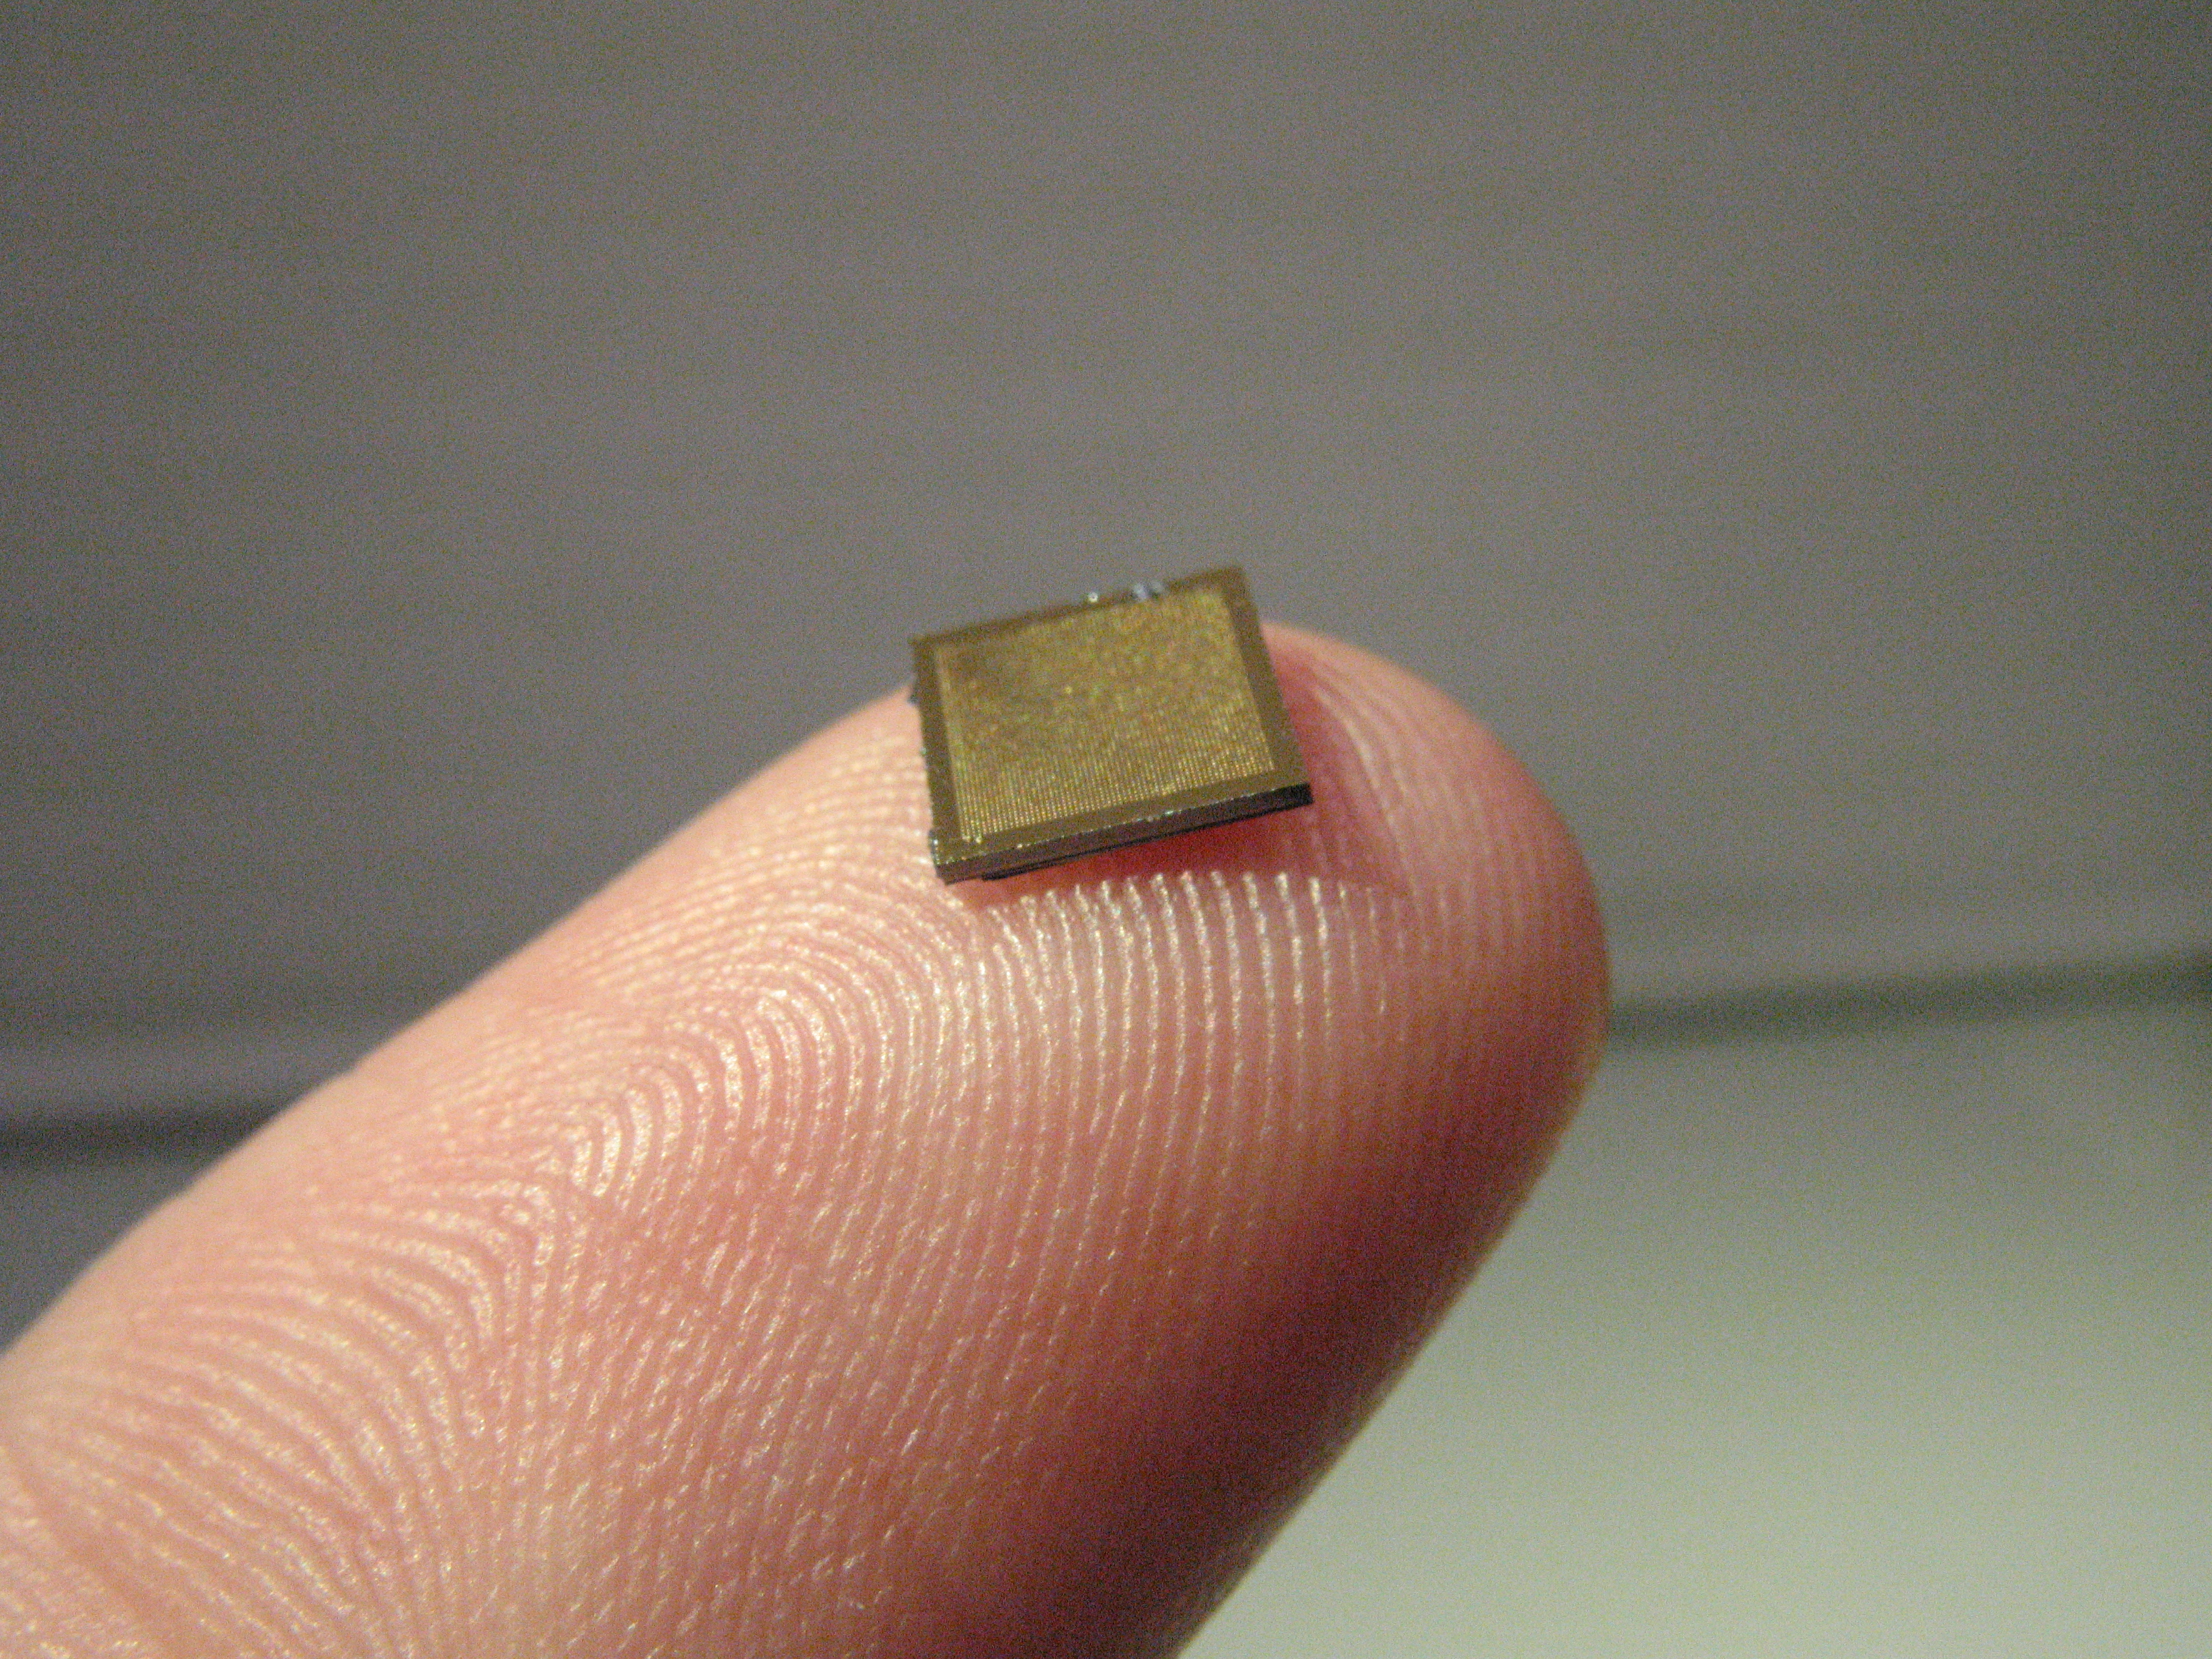 Single Nanopatch on a finger